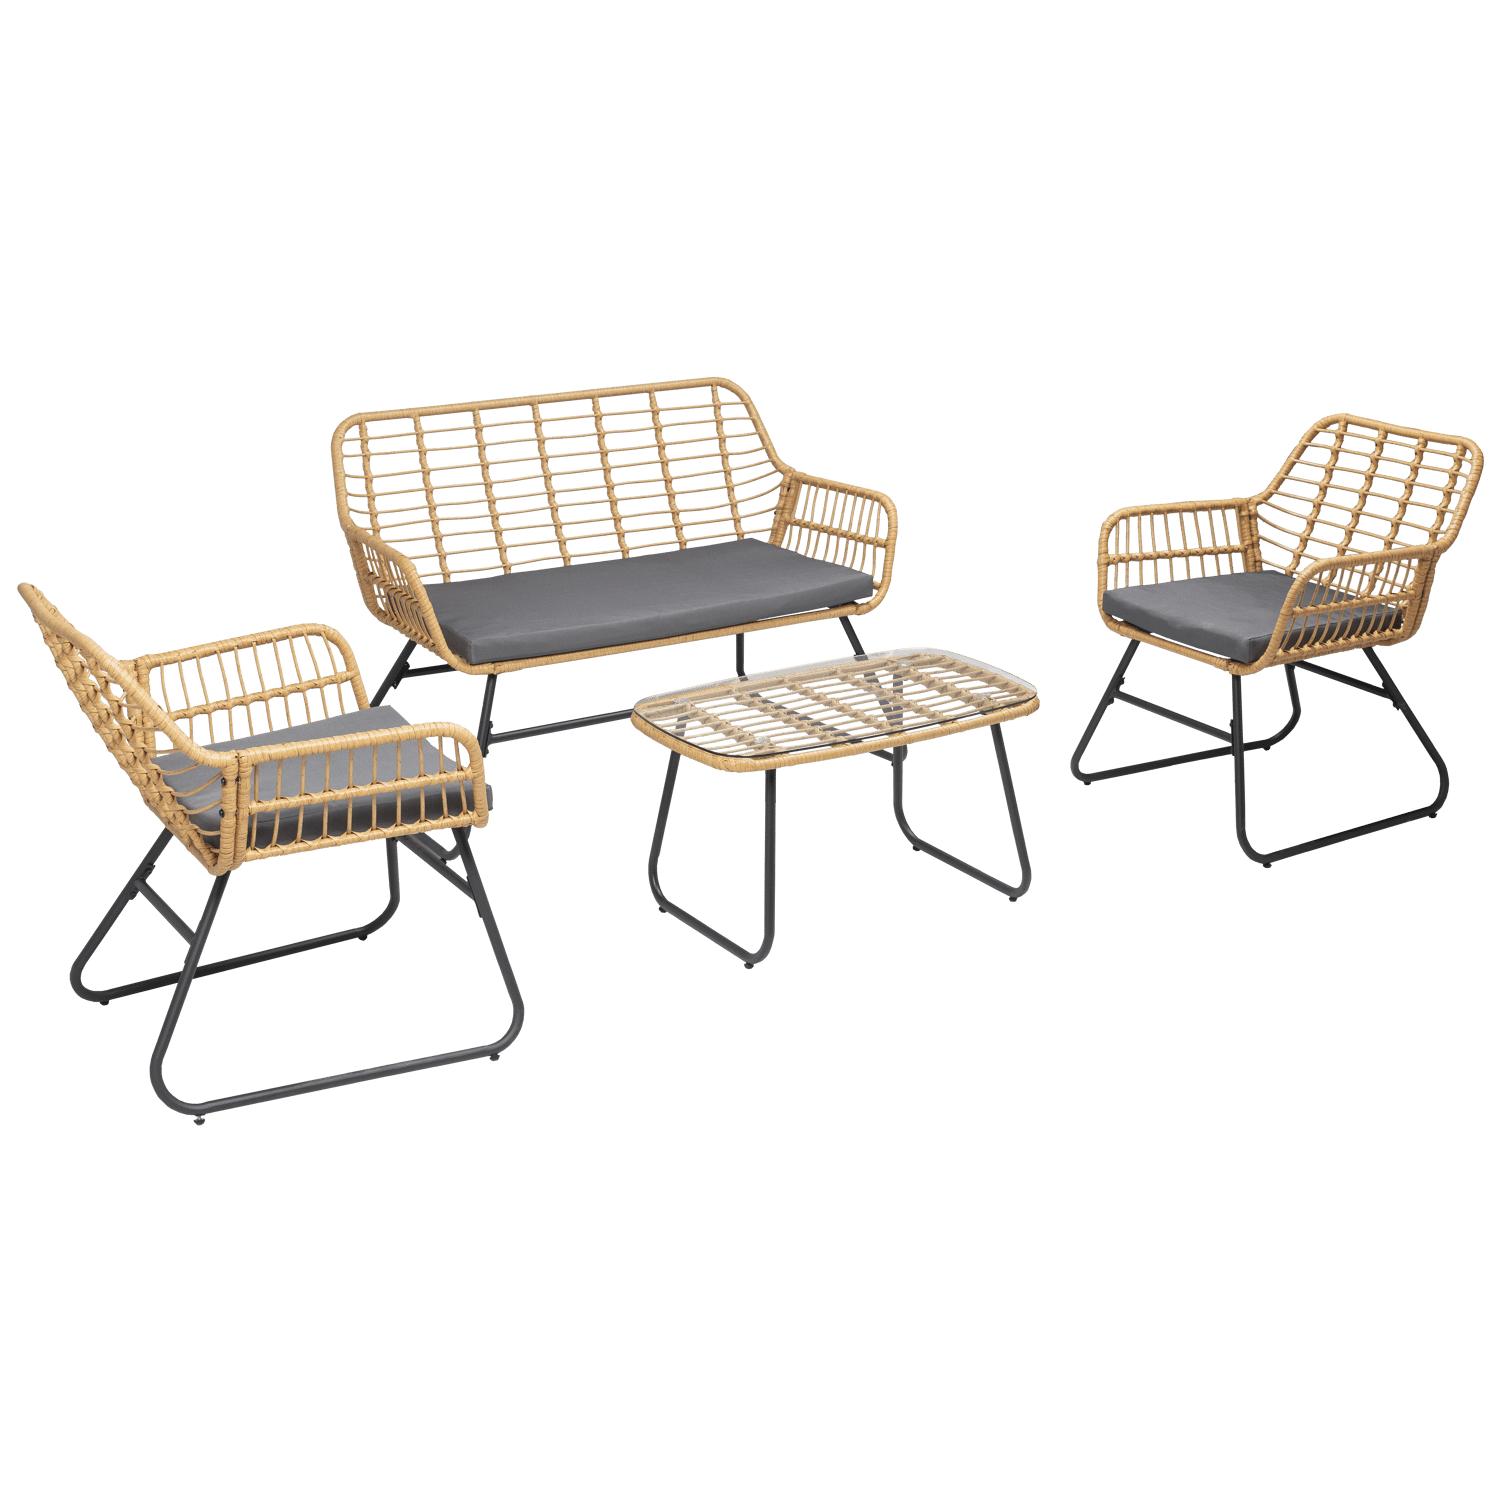 Conjunto de muebles de jardín TIGA de resina tejida 4 plazas - cojines grises